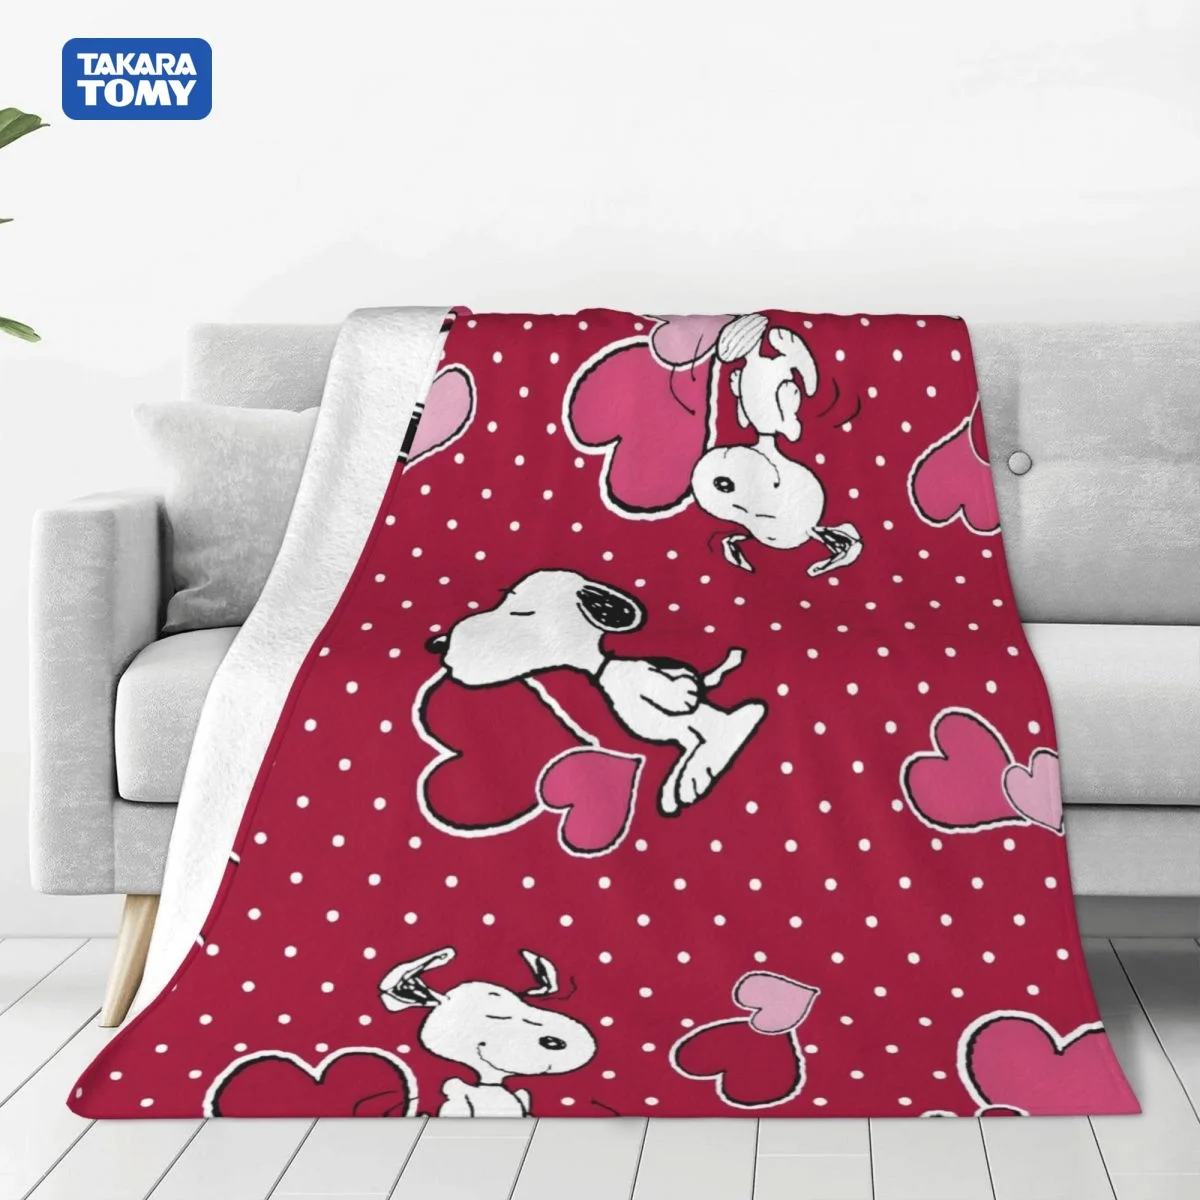 

TAKARA TOMY Snoopy Щенок Собака одеяло на кровать диван кондиционер спальный чехол постельное белье бросает одеяла простыня для детей